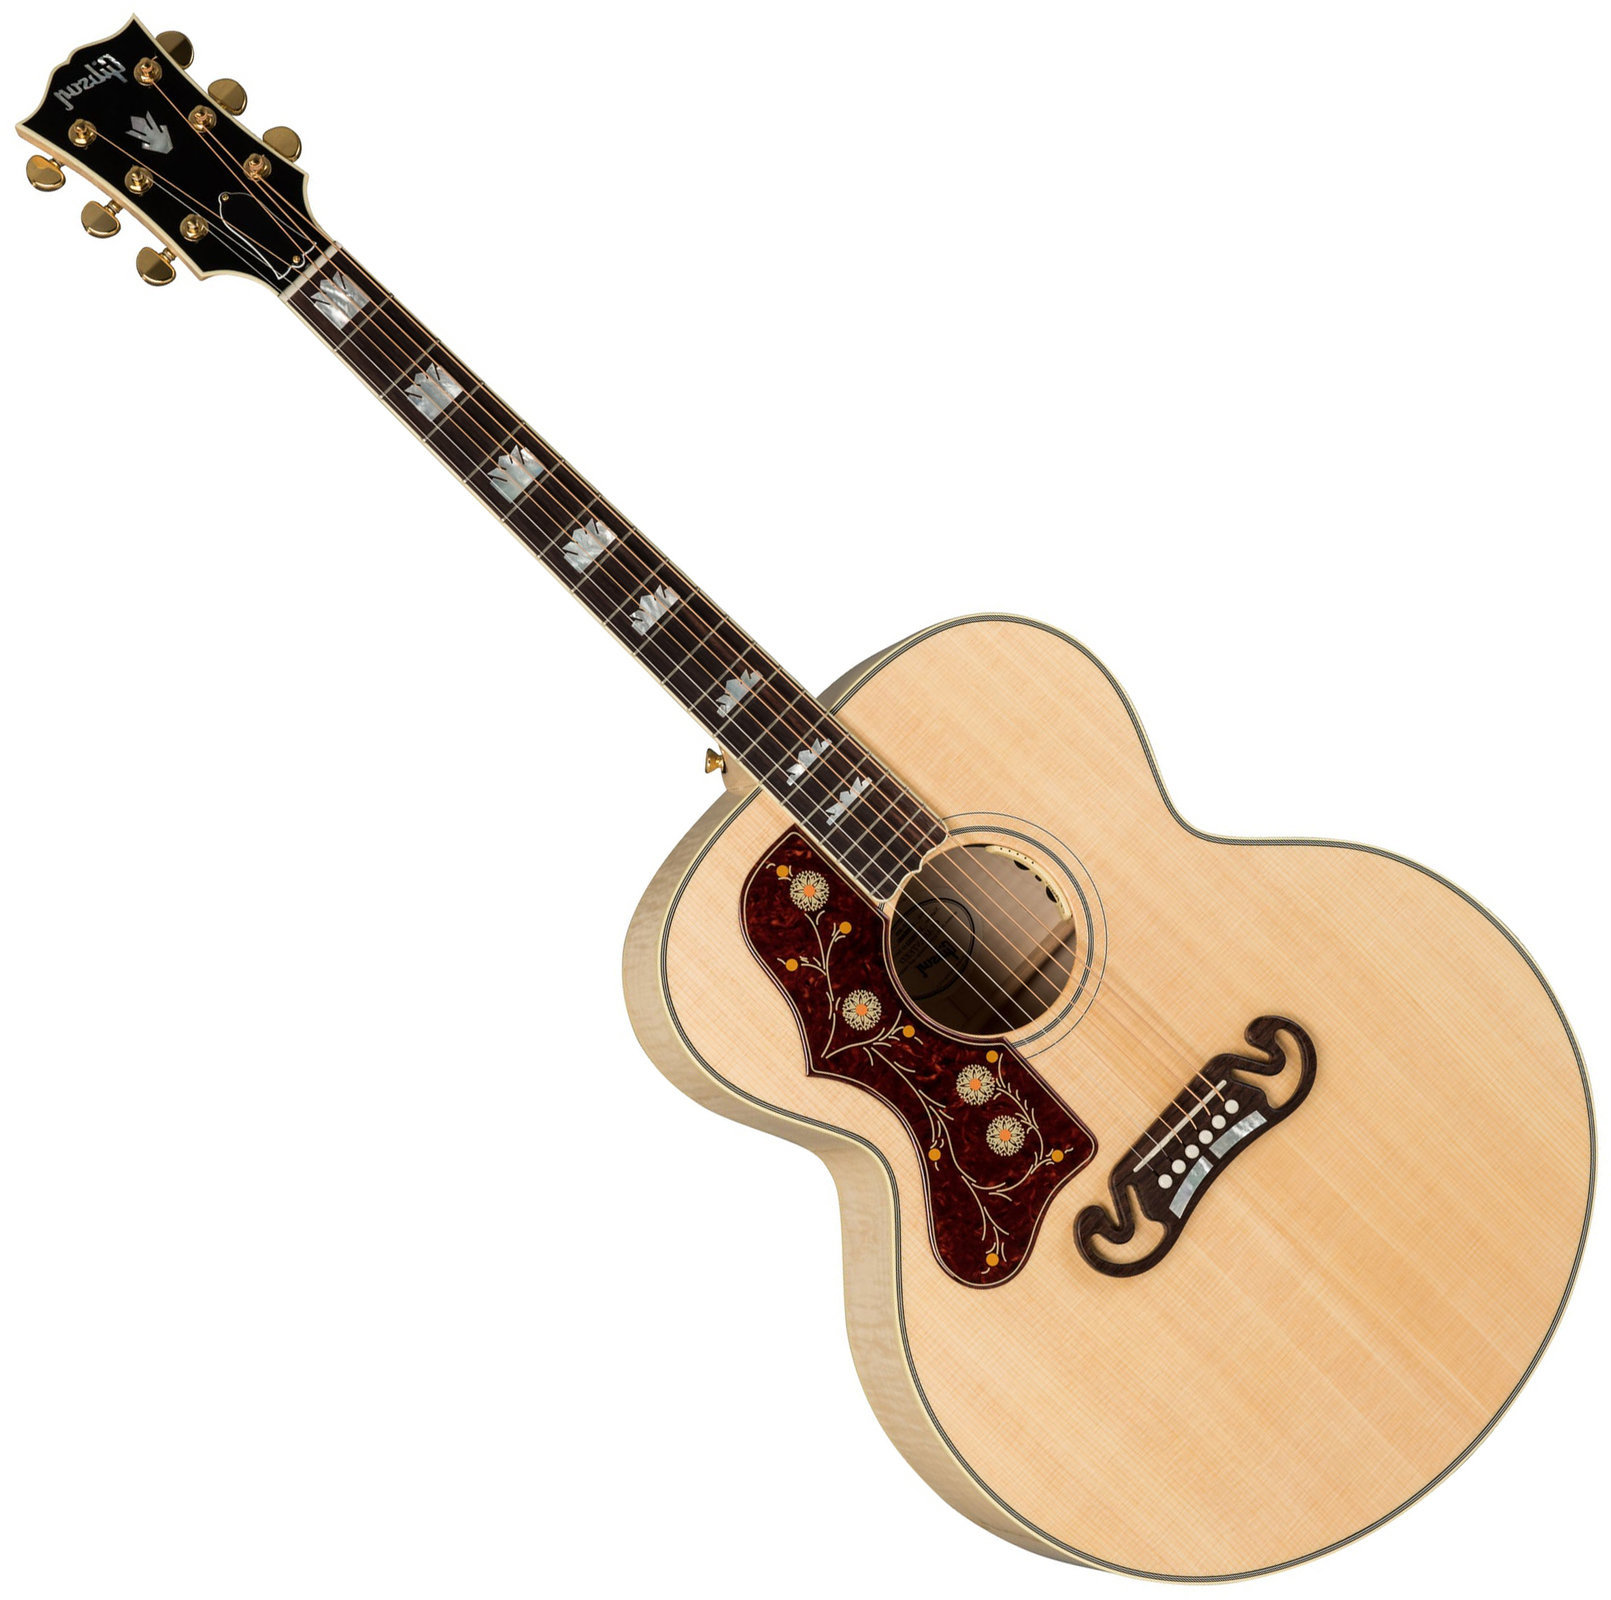 Ηλεκτροακουστική Κιθάρα Jumbo Gibson J-200 Standard 2019 Antique Natural Lefty